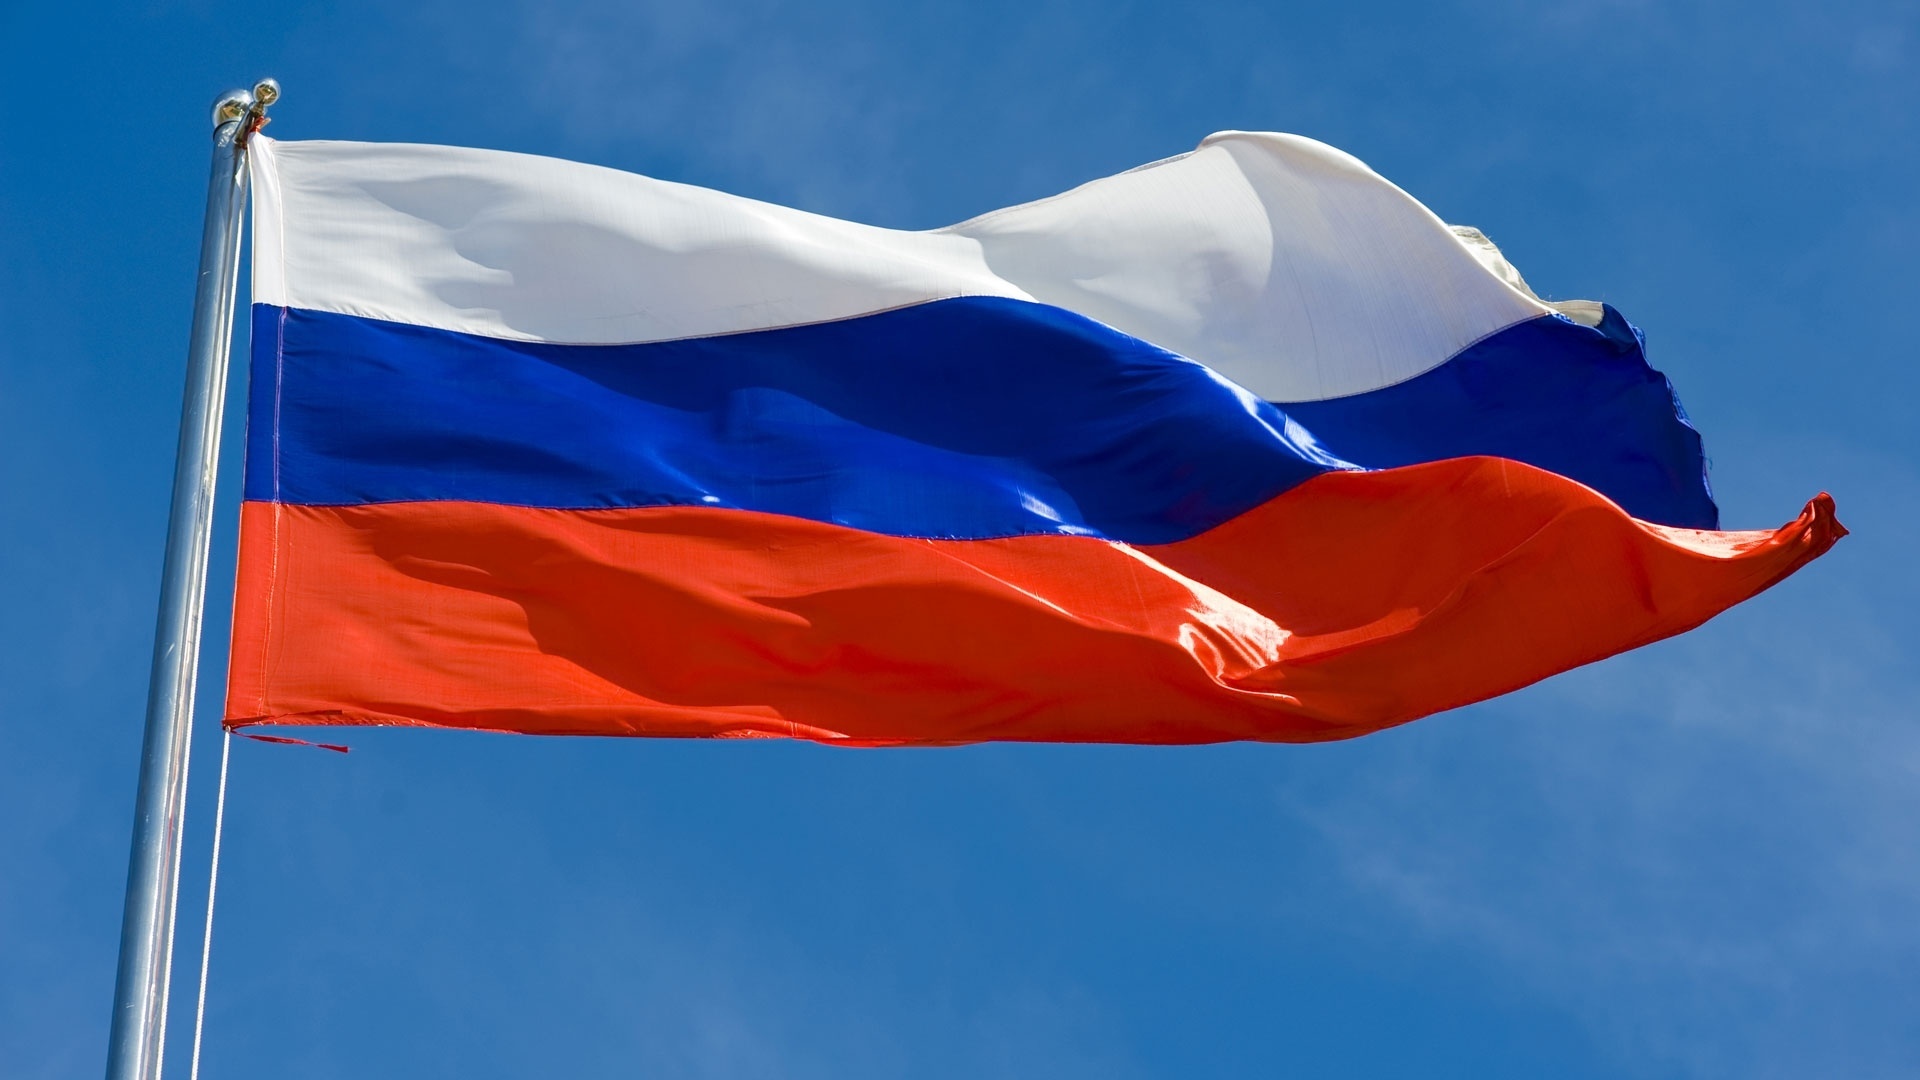 Rússia Oficialmente Federação Russa Bandeira Acenando Fundo